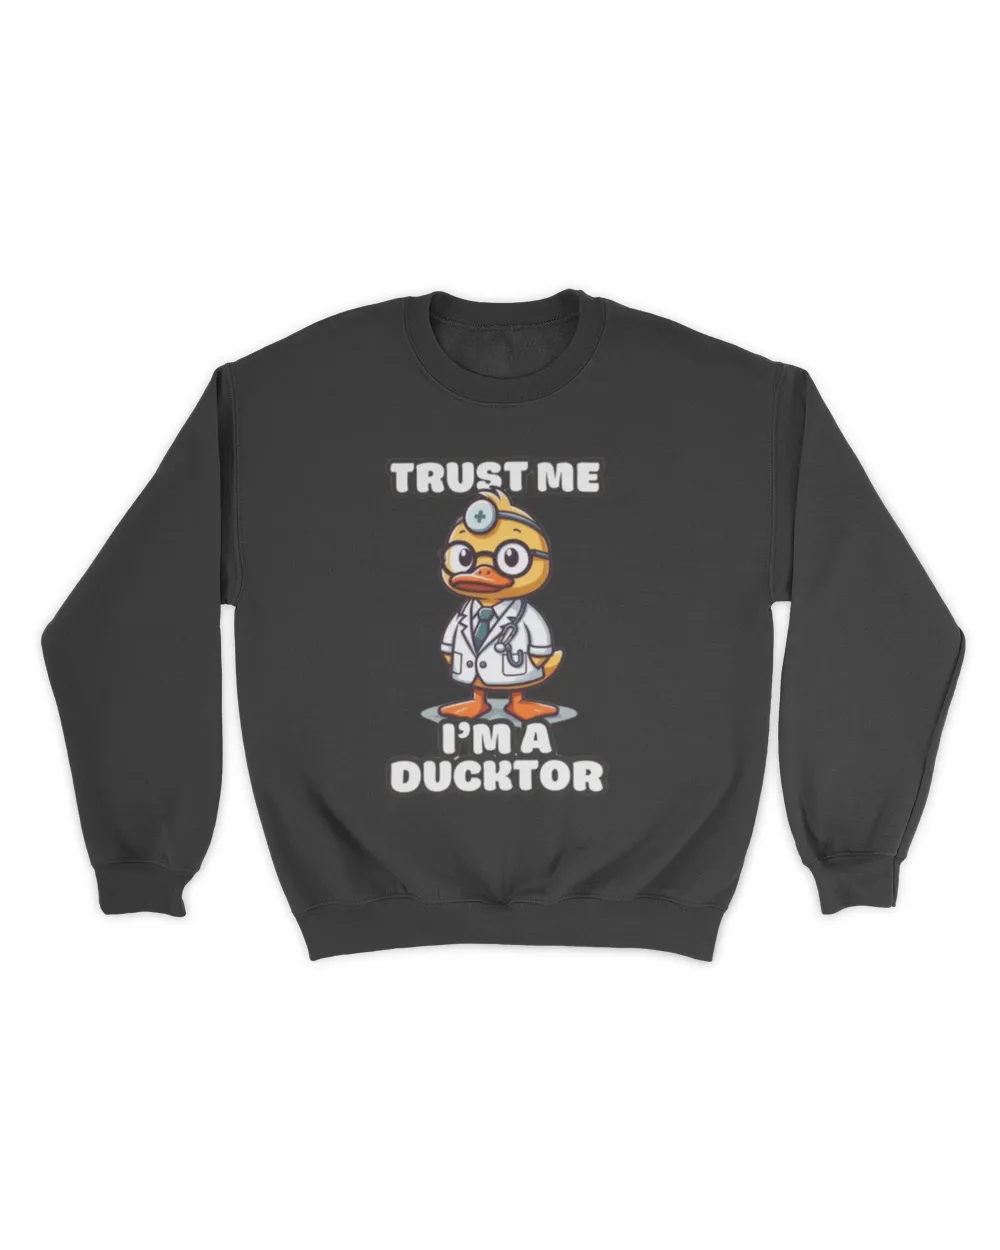 Trust Me, I'm A Ducktor - Duck T-shirt